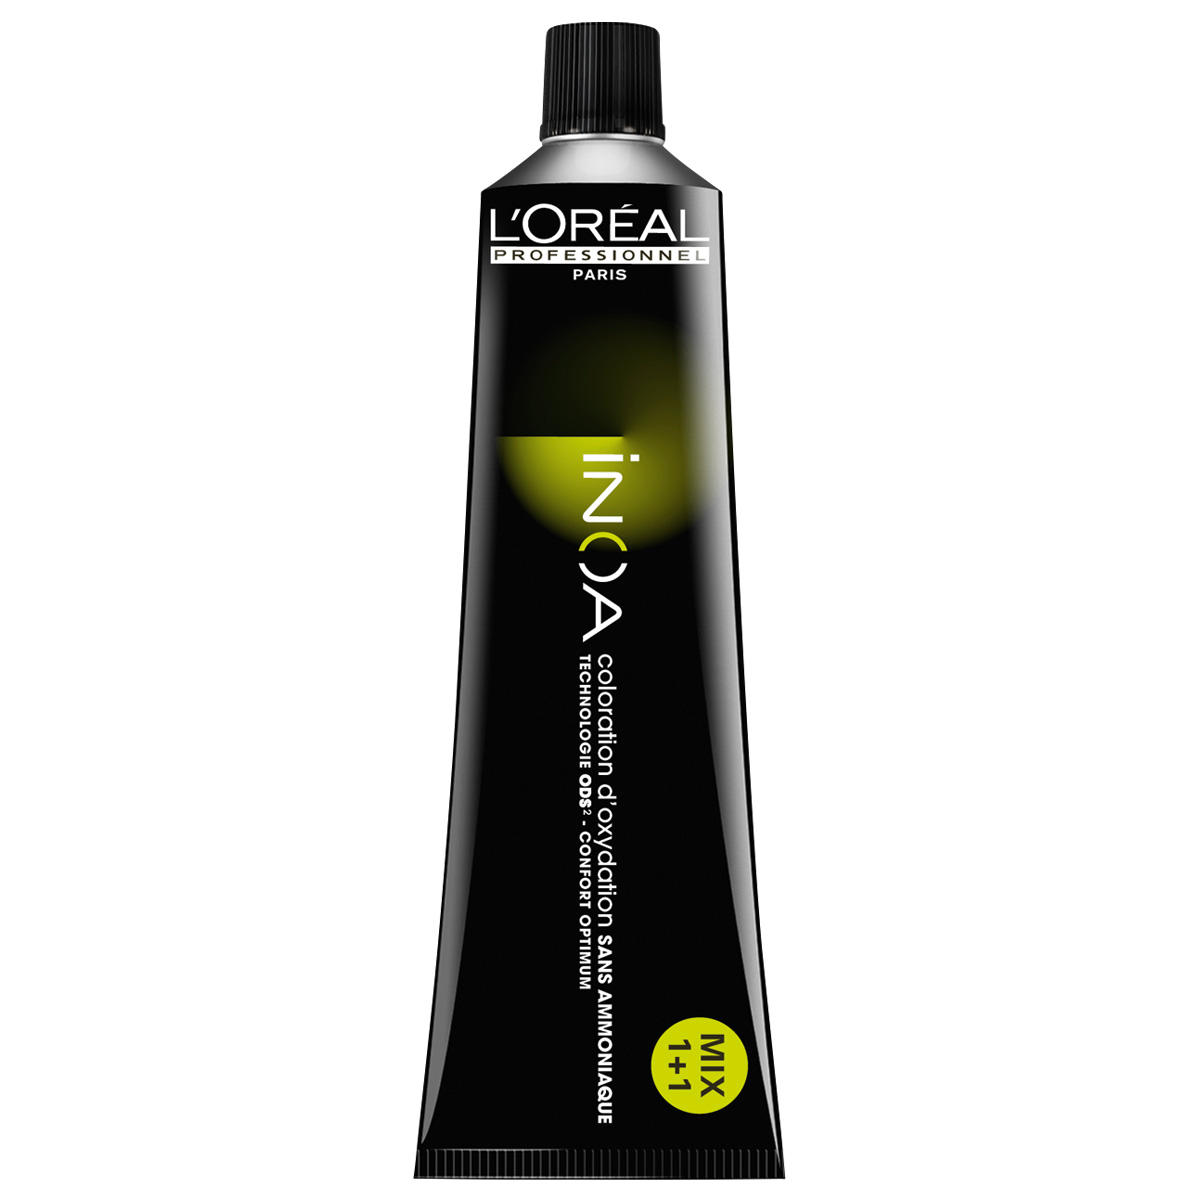 L'Oréal Professionnel Paris Coloration 7,34 Biondo medio oro rame, tubo 60 ml - 1